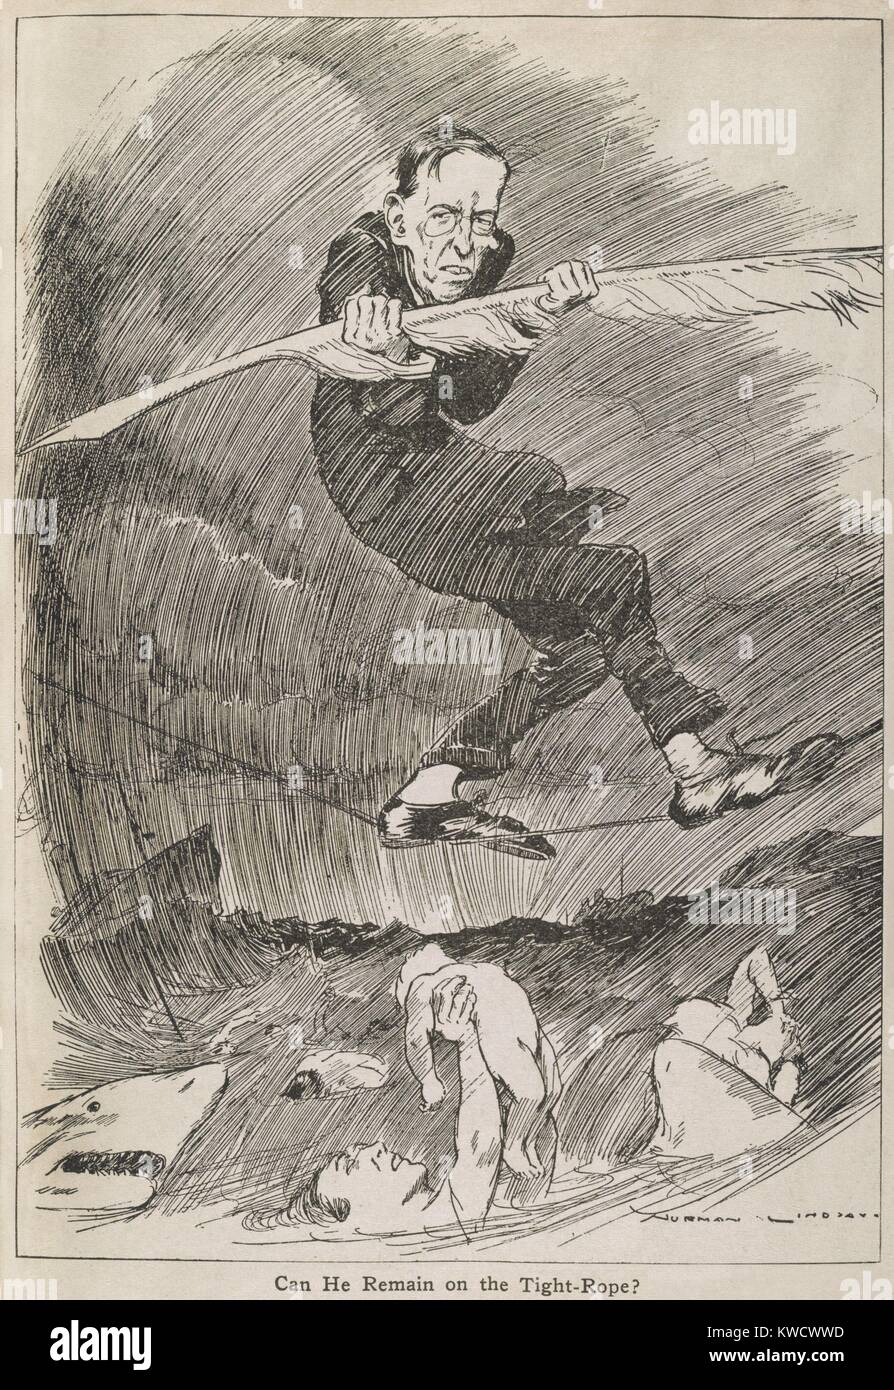 Kann ER AUF DEN ENGEN - Seil bleiben? Präsident Woodrow Wilson Balancing mit einem Federkiel, auf einem Seil über einem Hai befallene Atlantik und Opfer der deutschen U-Boot-Krieges. 1917 vom australischen Zeichner, Norman Lindsay (BSLOC 2017 1 36) Stockfoto